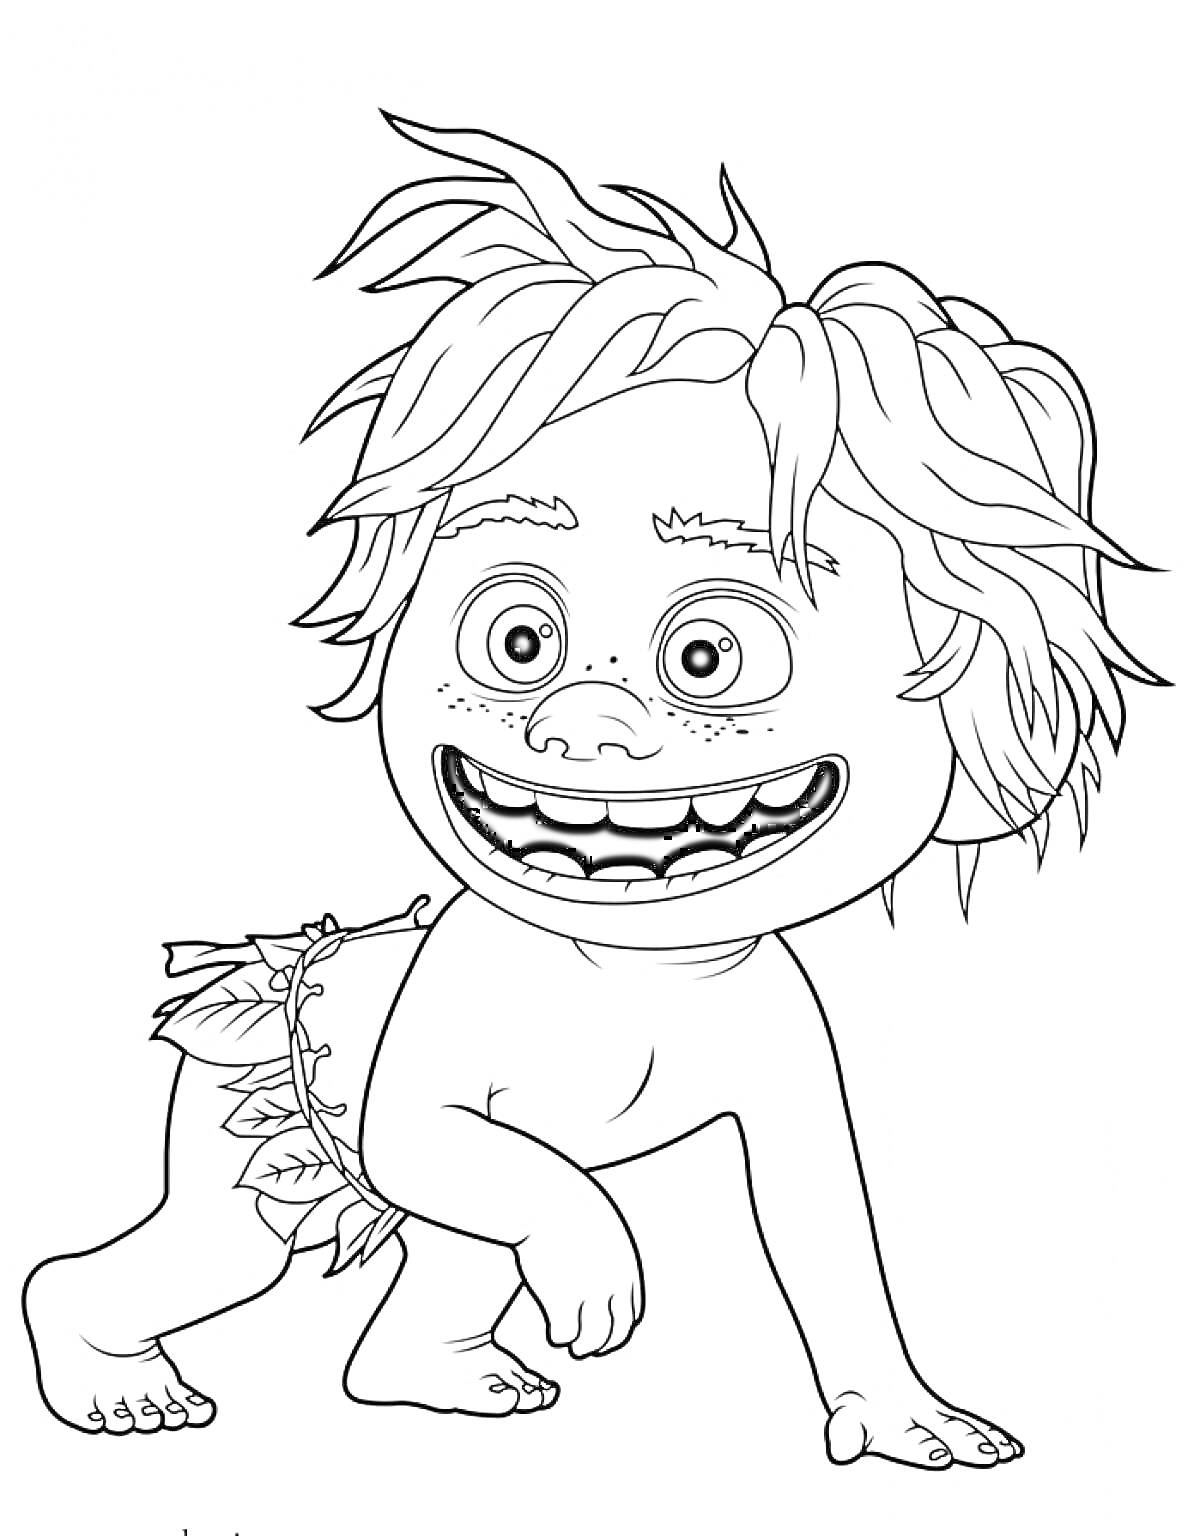 Раскраска мальчик с длинными растрепанными волосами, на четвереньках, с набедренной повязкой из листьев